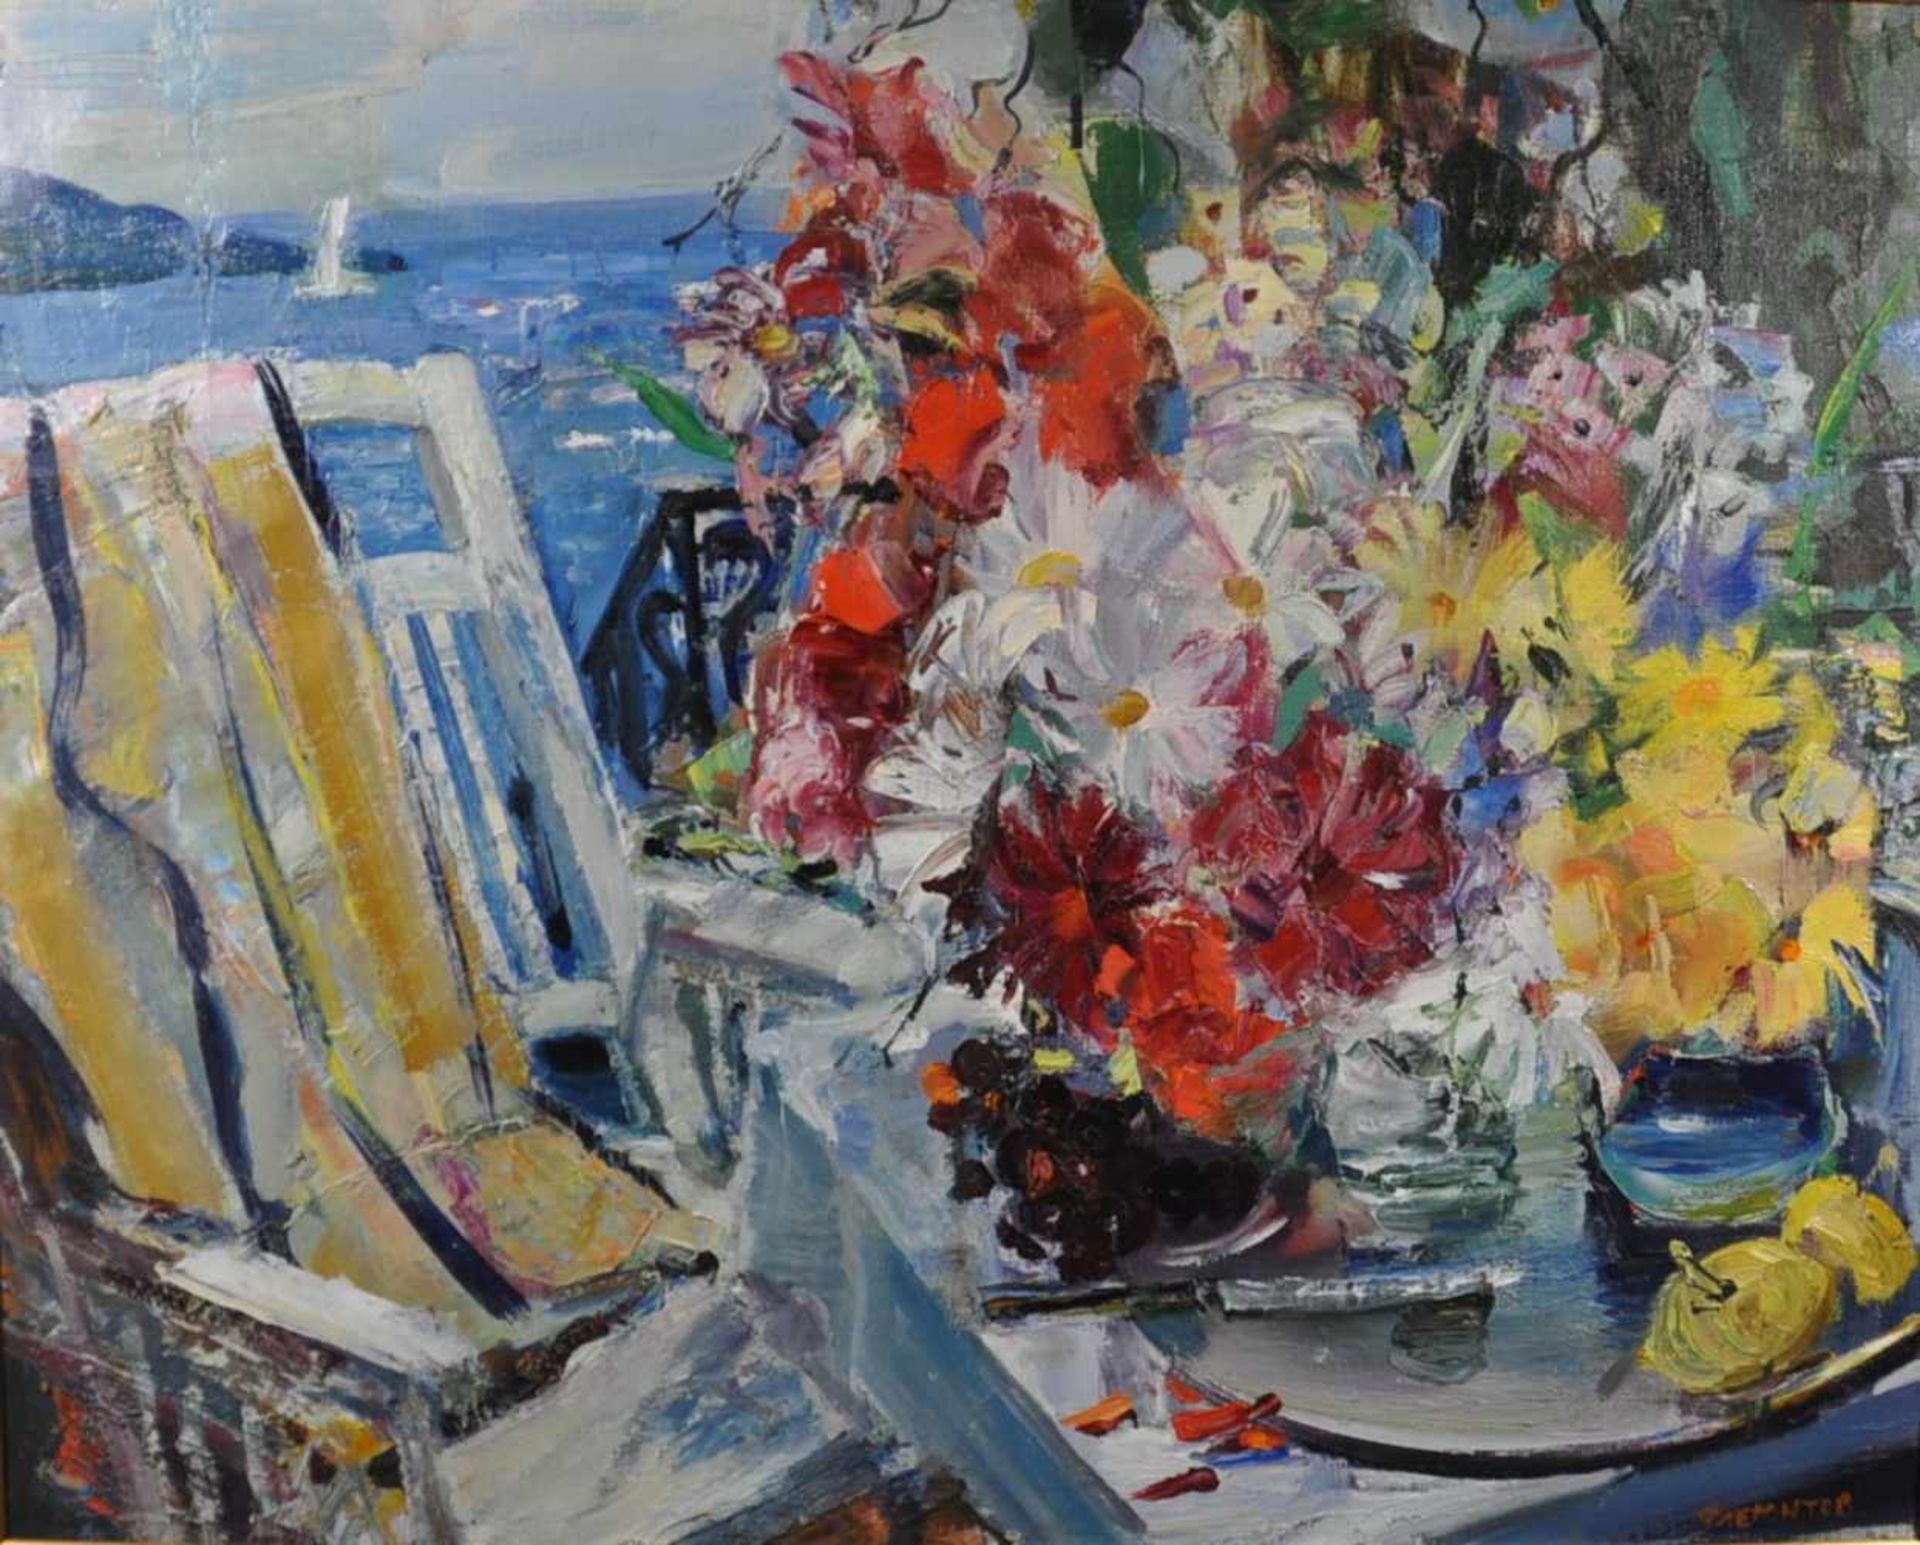 Fliegontov, Dmitri (1975) "Idylle auf der Terrasse", Öl auf Lw., 80 x 100 cm, Rechts unten signiert,